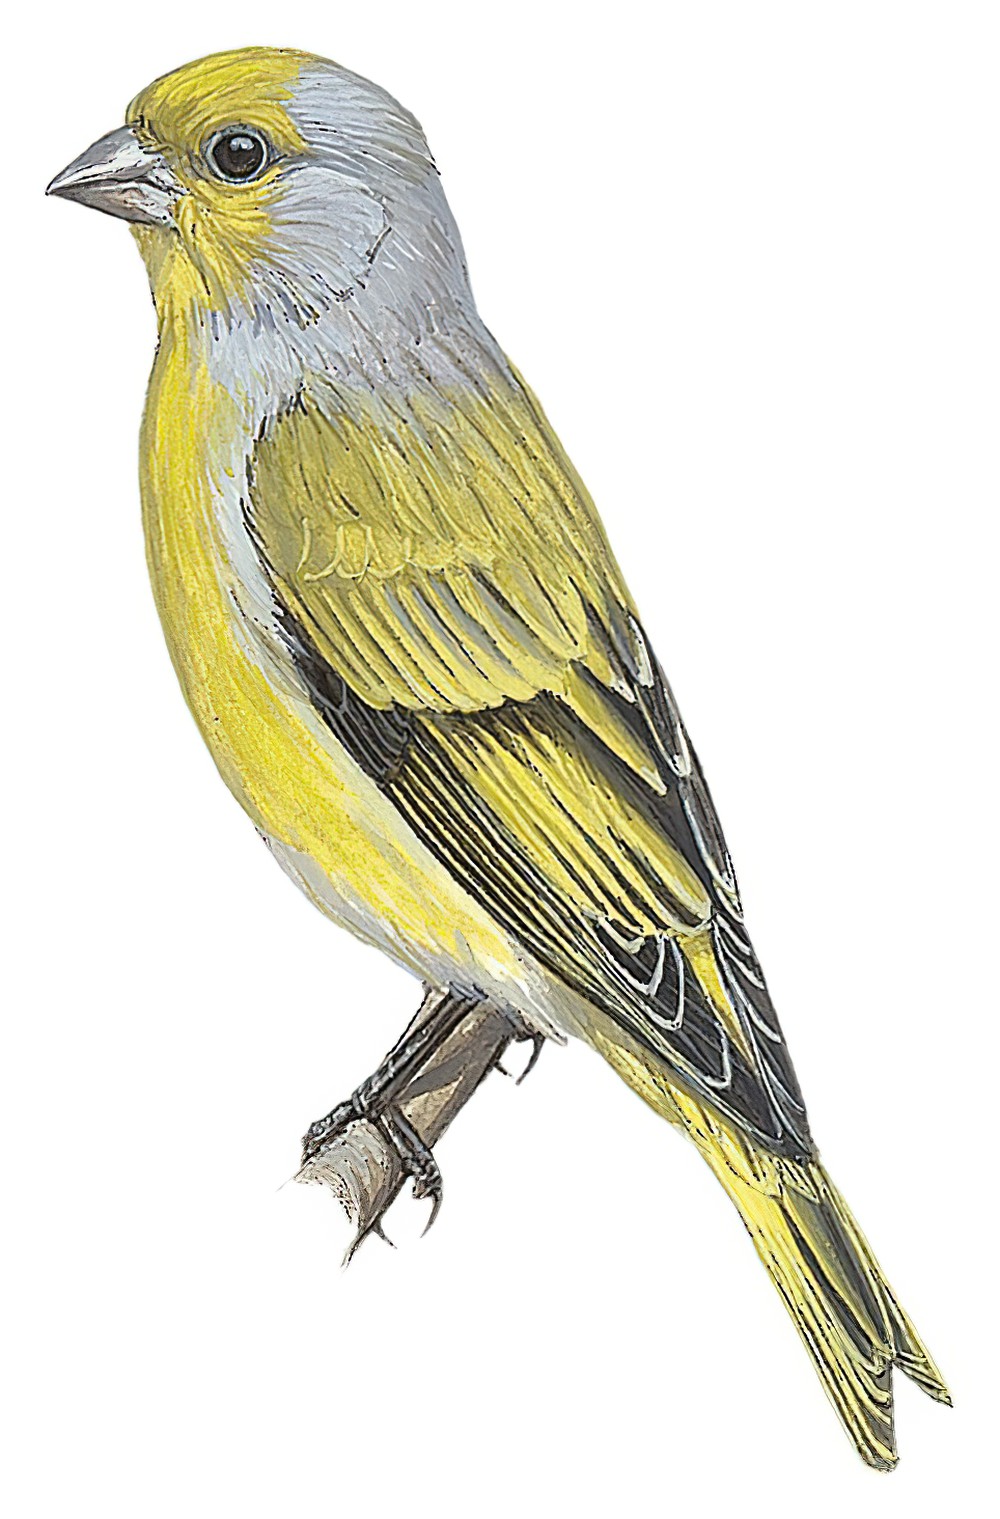 Cape Canary / Serinus canicollis